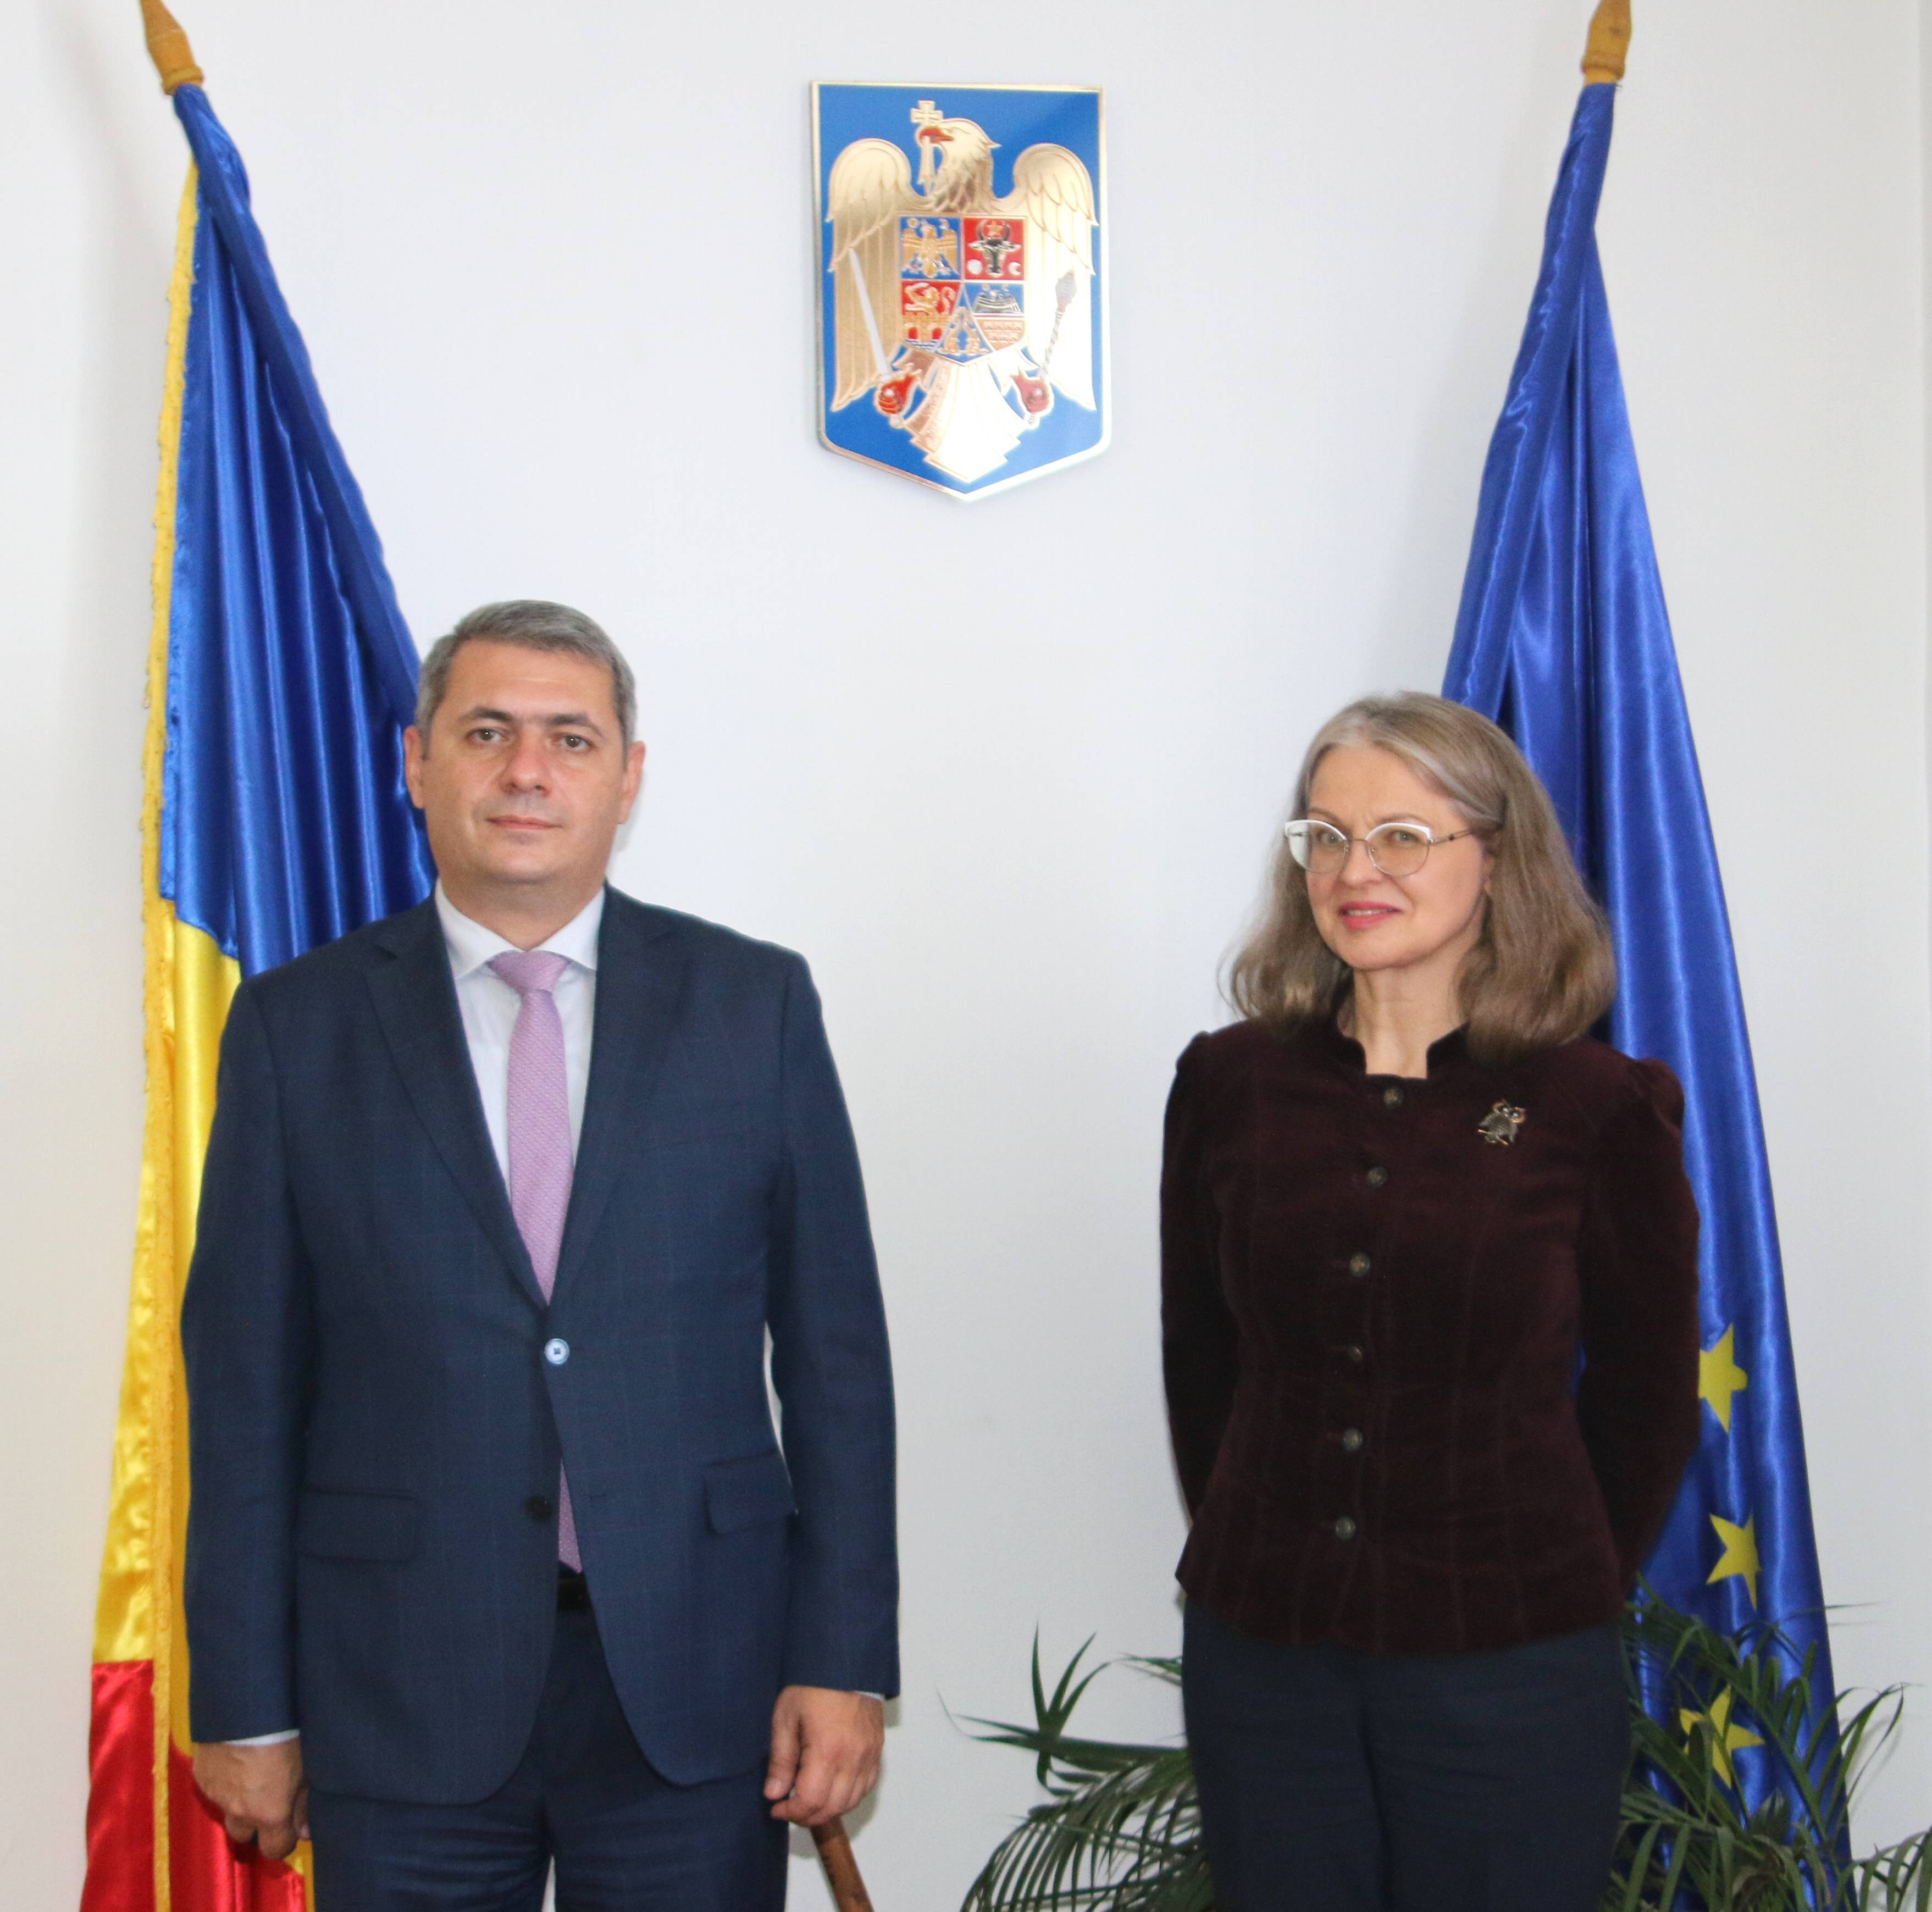 Pe 21 octombrie, Ambasadorul Republicii Armenia în Romania, Sergey Minasyan a avut o întrevedere cu președintele Comisiei pentru Afaceri Europene a Senatului României, Gabriela Crețu.